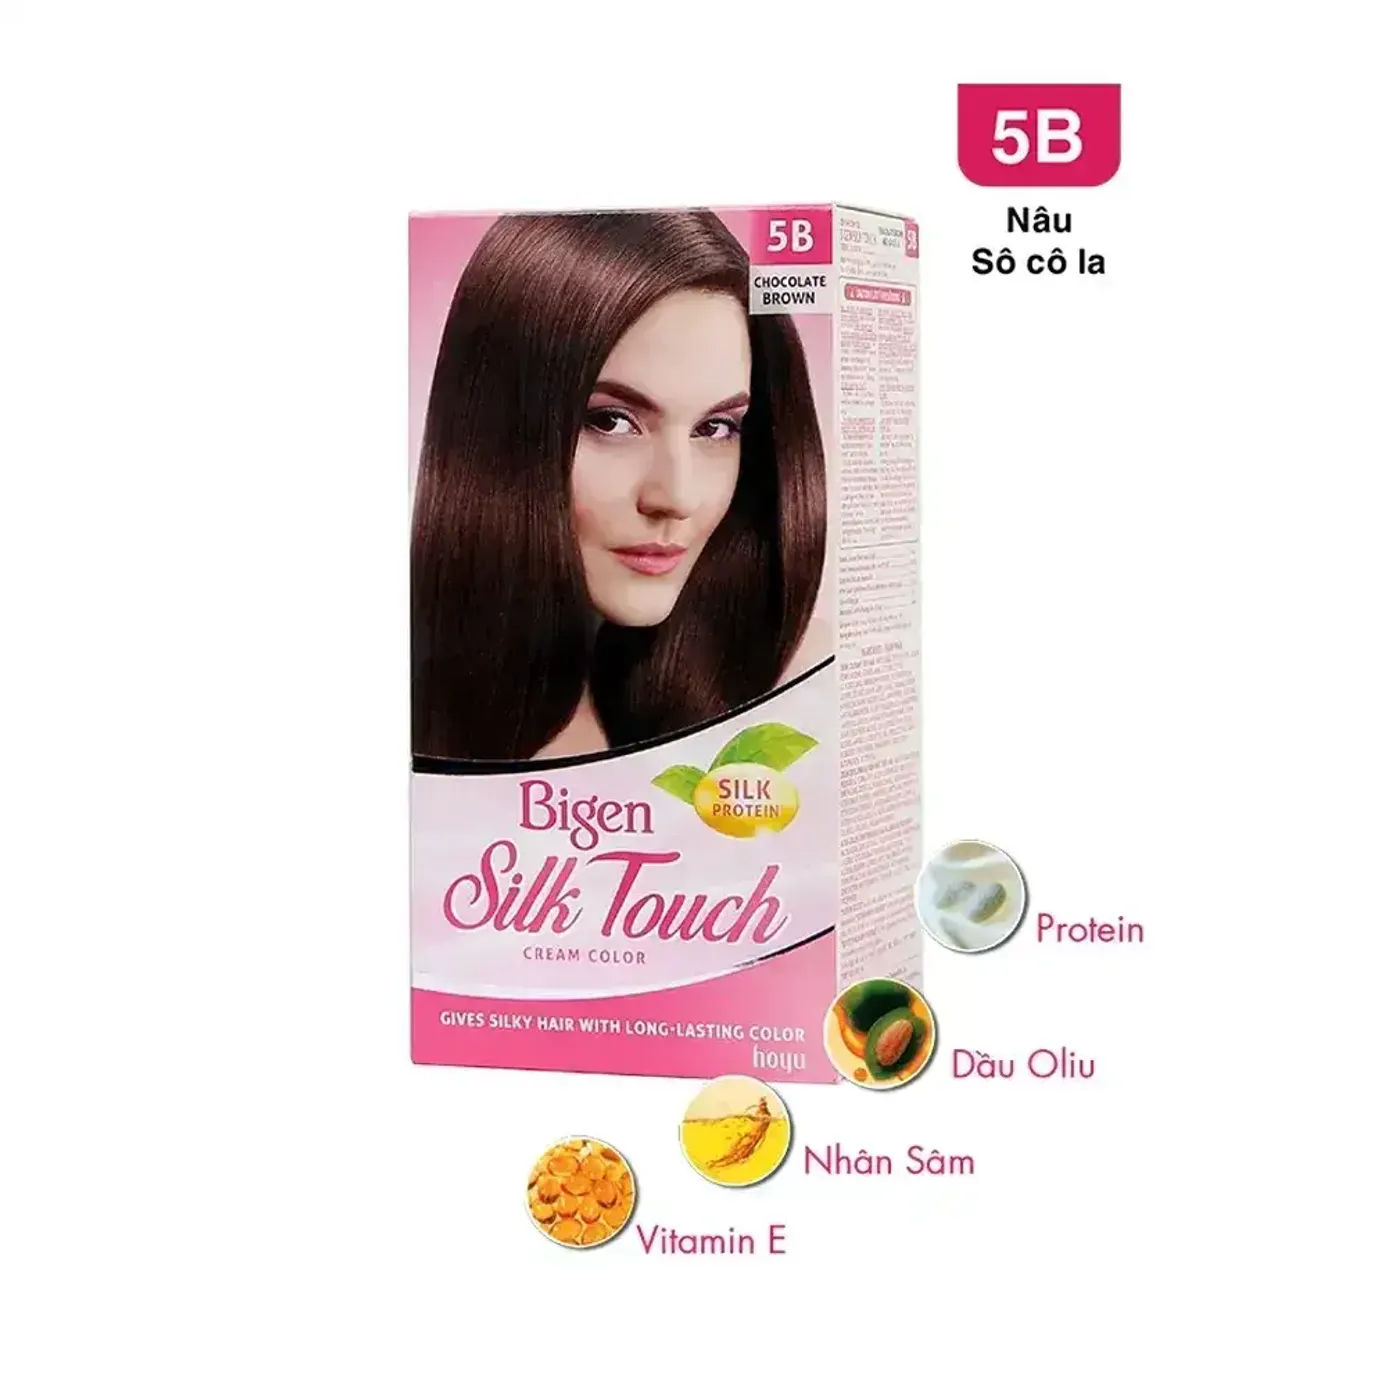 Kem nhuộm tóc phủ bạc Bigen Silk Touch: Loại kem nhuộm tóc phủ bạc Bigen Silk Touch sẽ giúp bạn trẻ trung và tự tin hơn. Với khả năng che phủ tuyệt đối và độ bền màu lên đến 6 tuần, bạn sẽ không cần phải lo lắng về những sợi tóc bạc nữa. Tóc của bạn còn được bảo vệ bởi các thành phần thiên nhiên, giúp tái tạo tóc từ bên trong. Xem ngay hình ảnh để biết thêm chi tiết.